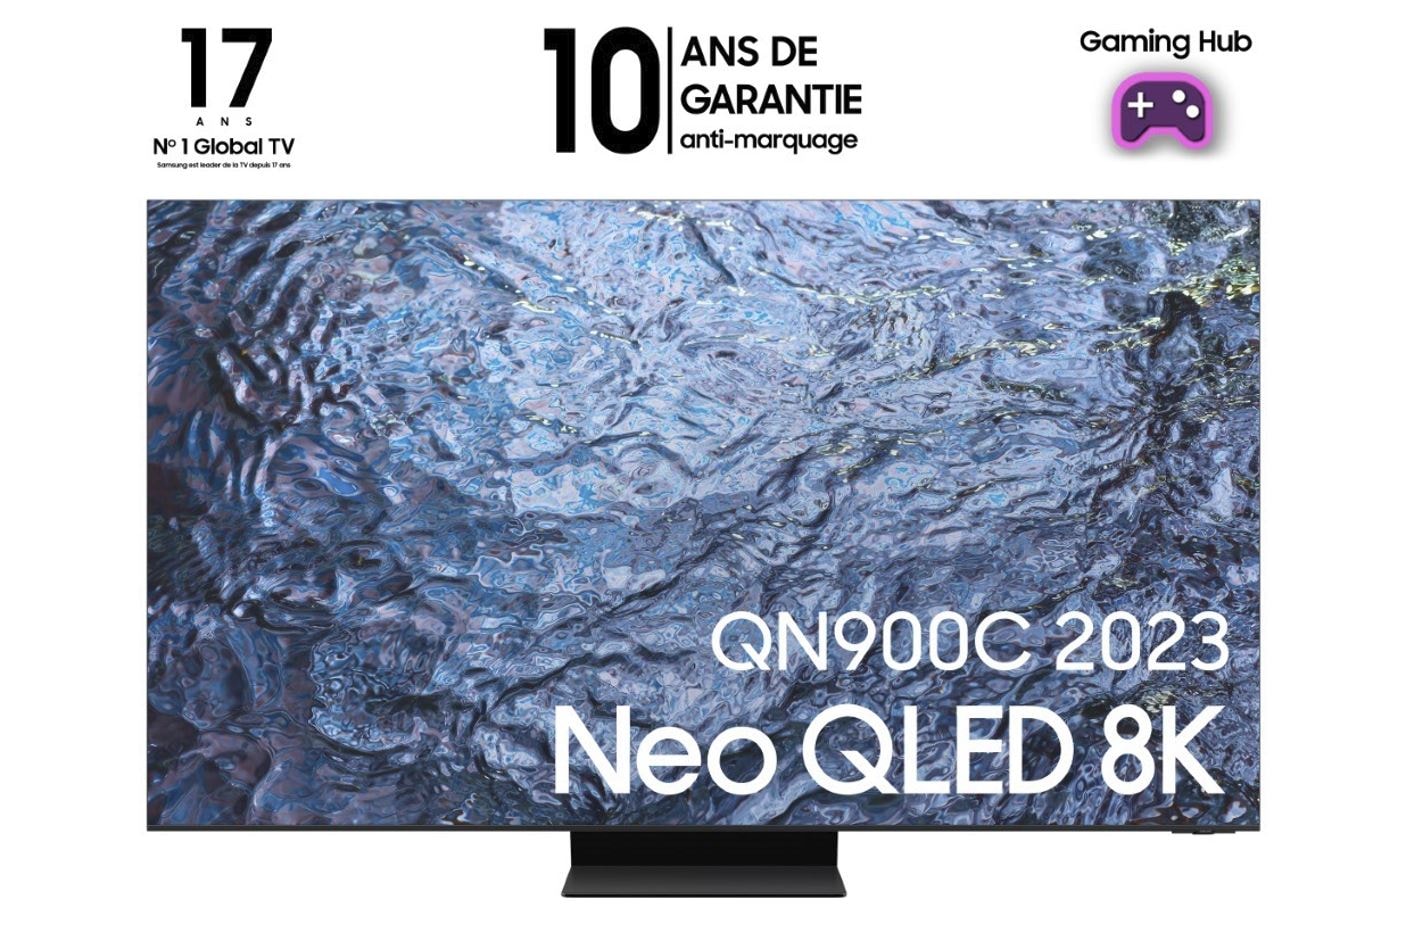 French Days : la TV 4K QLED Samsung Q70B de 65 pouces à moins de